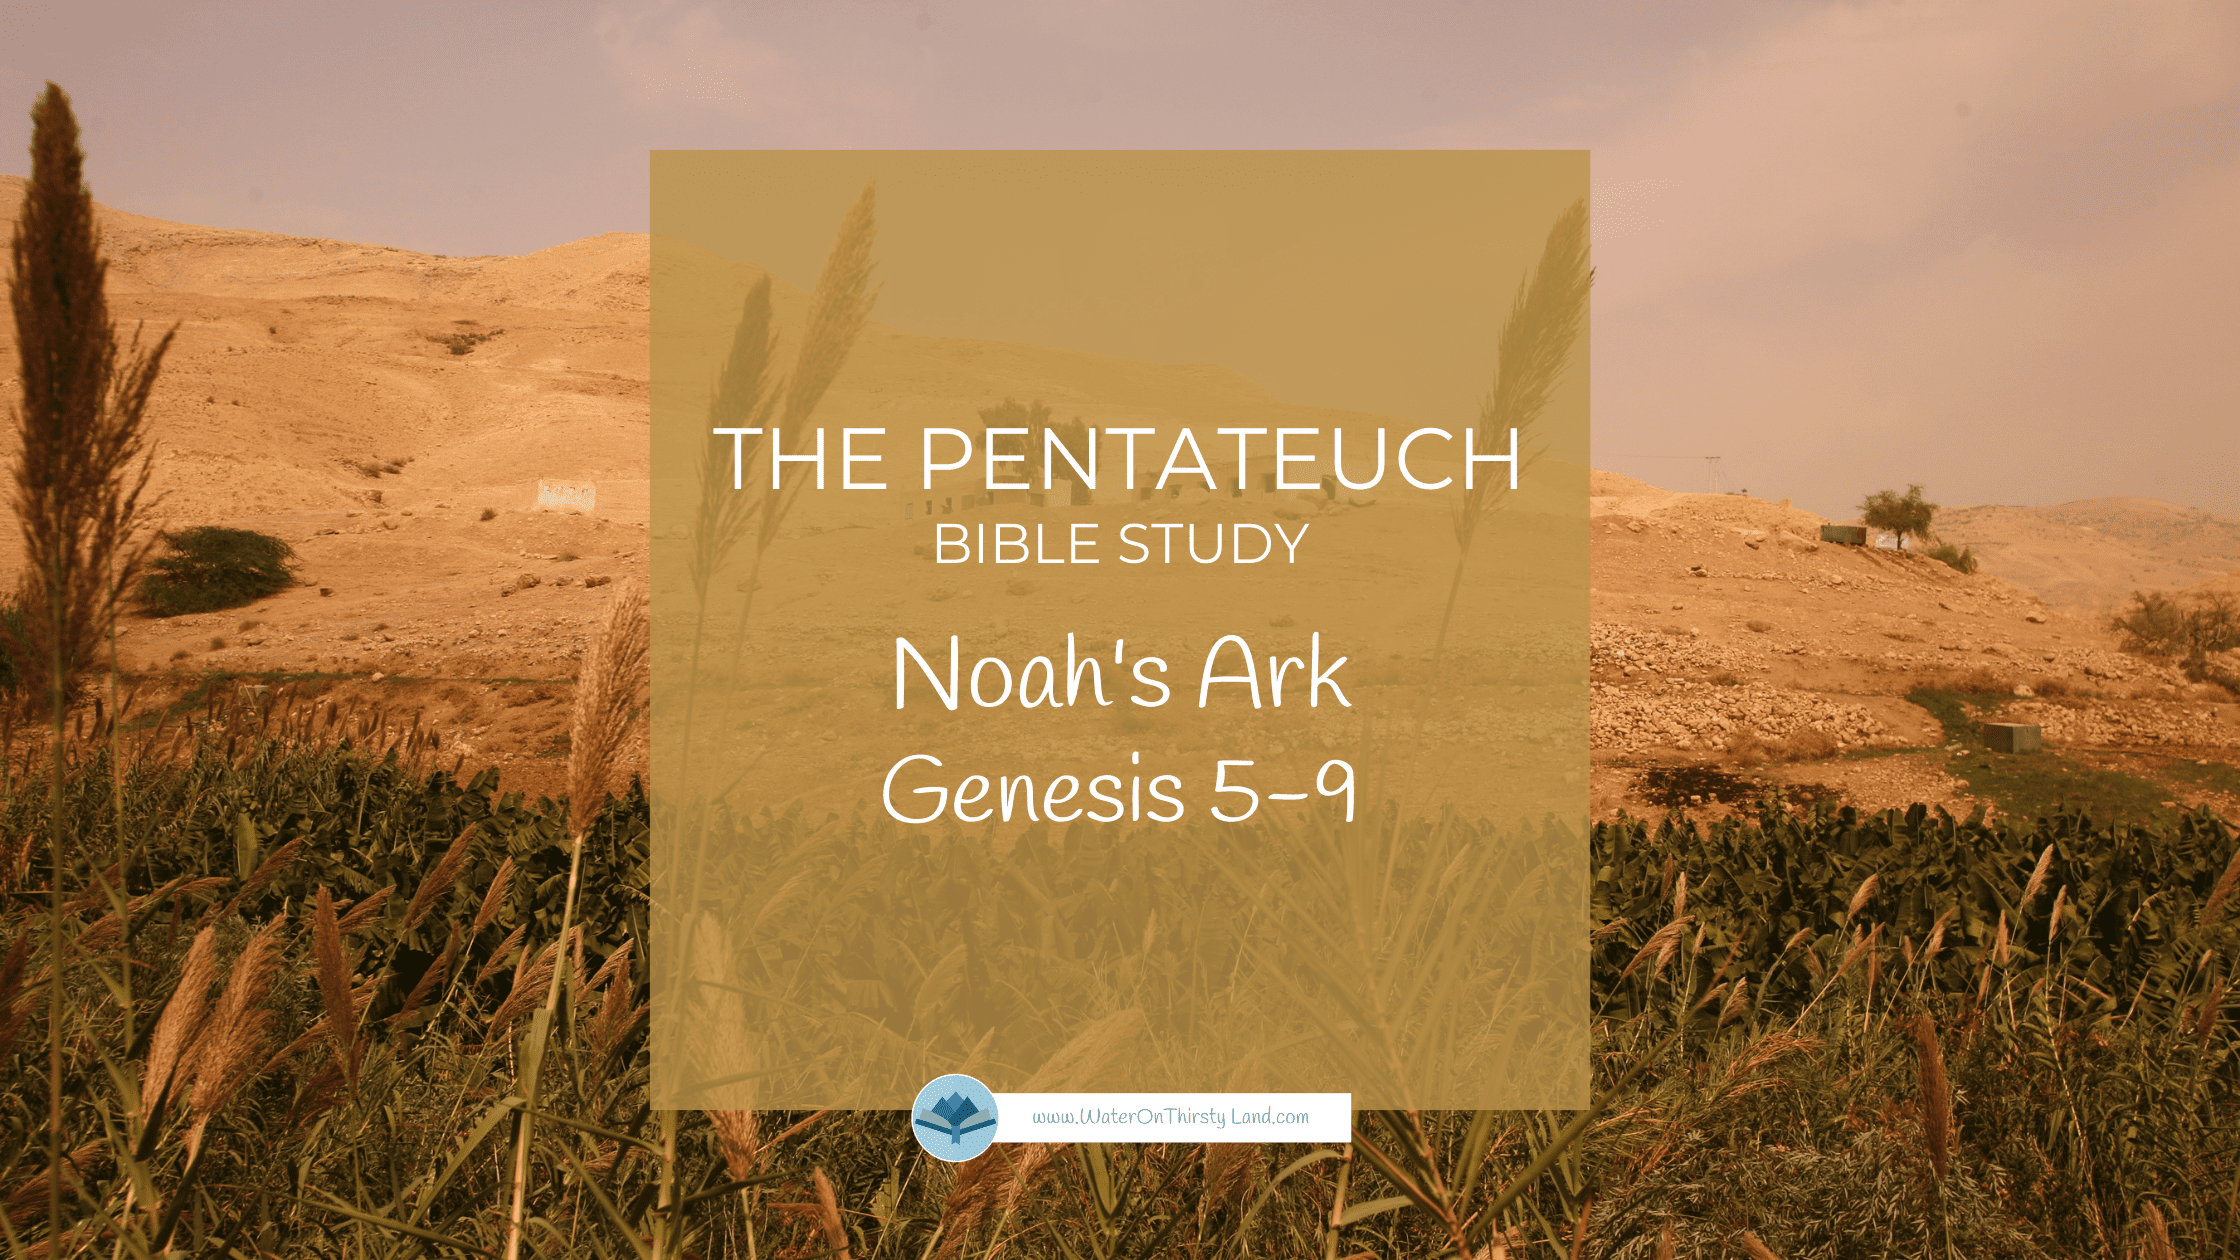 Pentateuch Noah's Ark Genesis 5-9